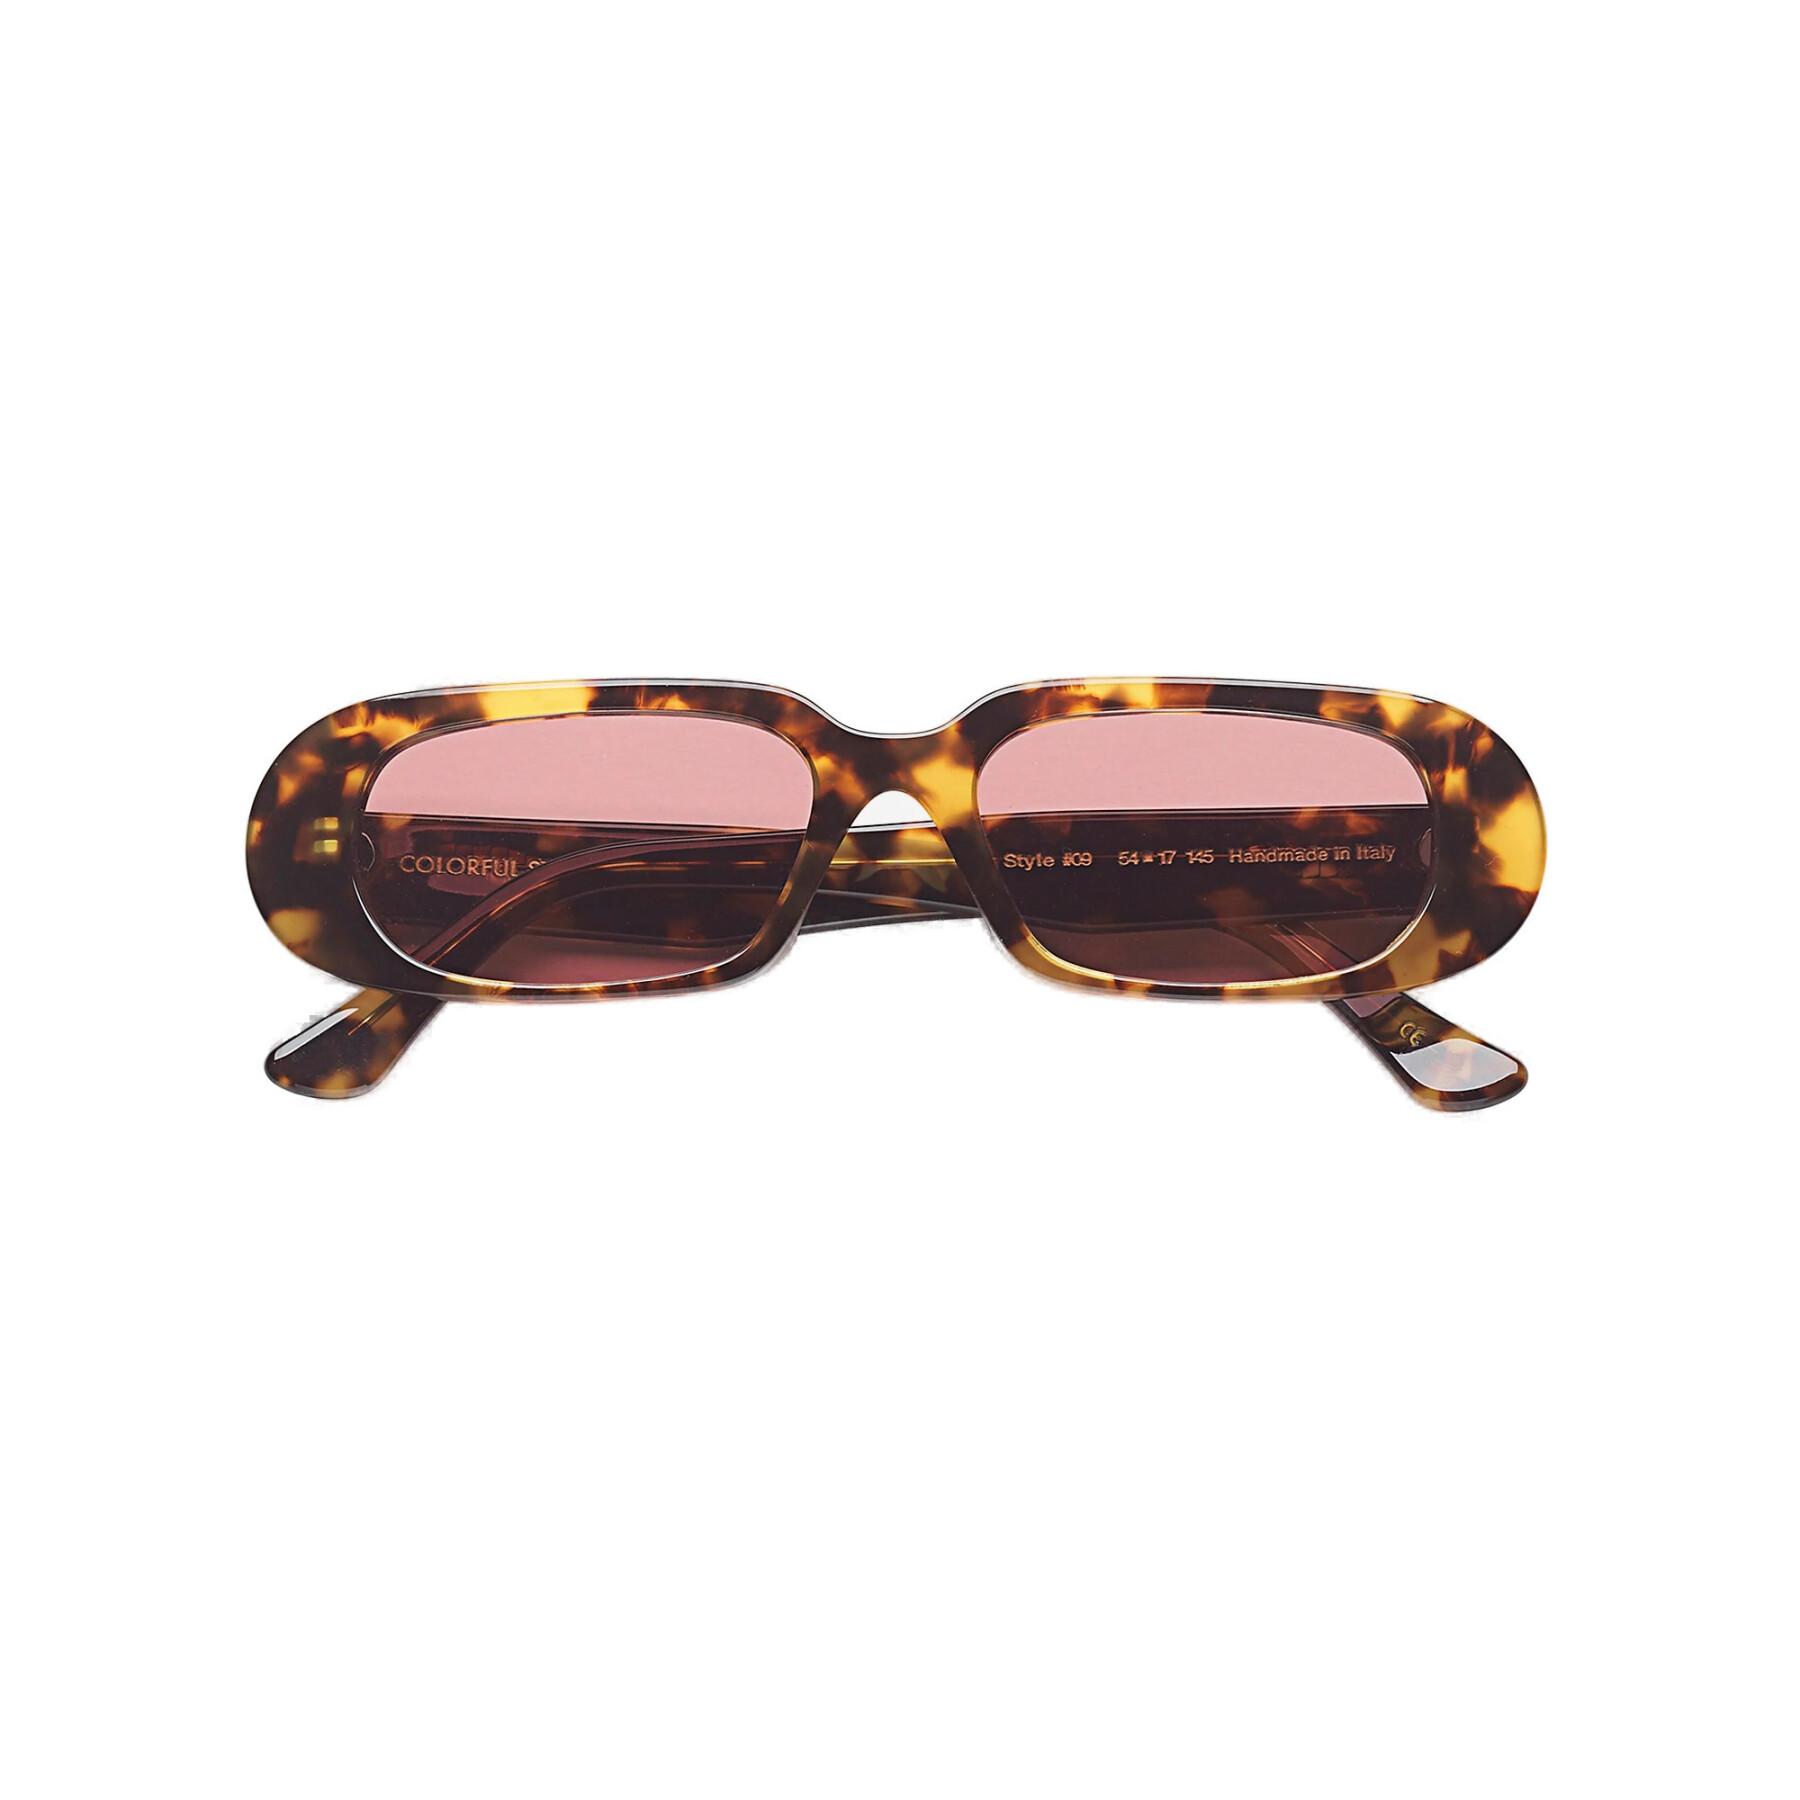 Óculos escuros Colorful Standard 09 classic havana/dark pink